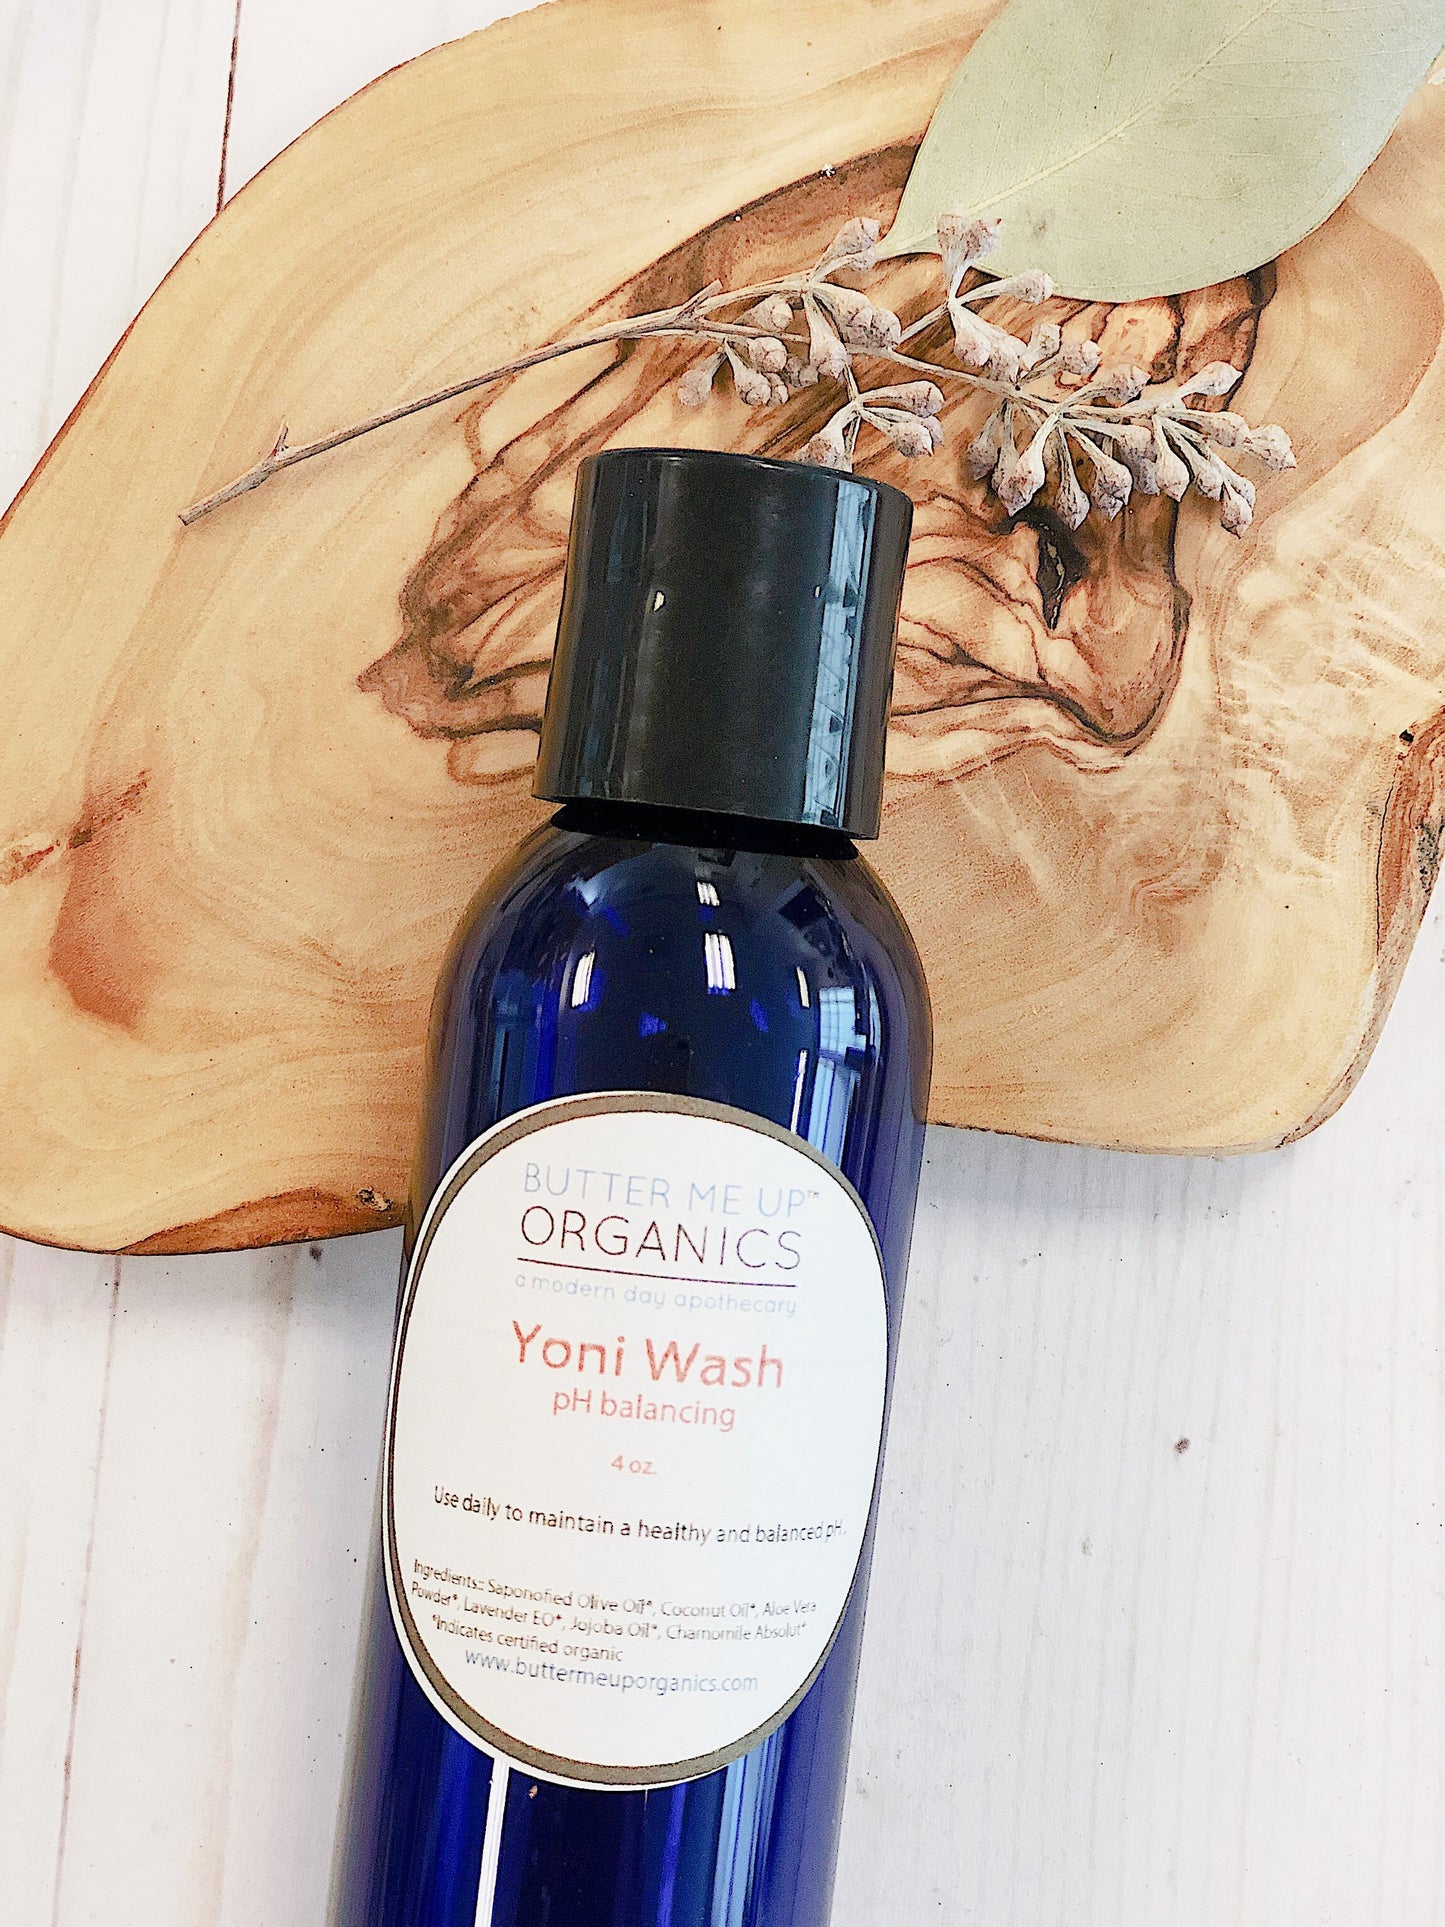 Yoni wash / Feminine Wash / Organic Feminine Wash / Organic Yoni Wash